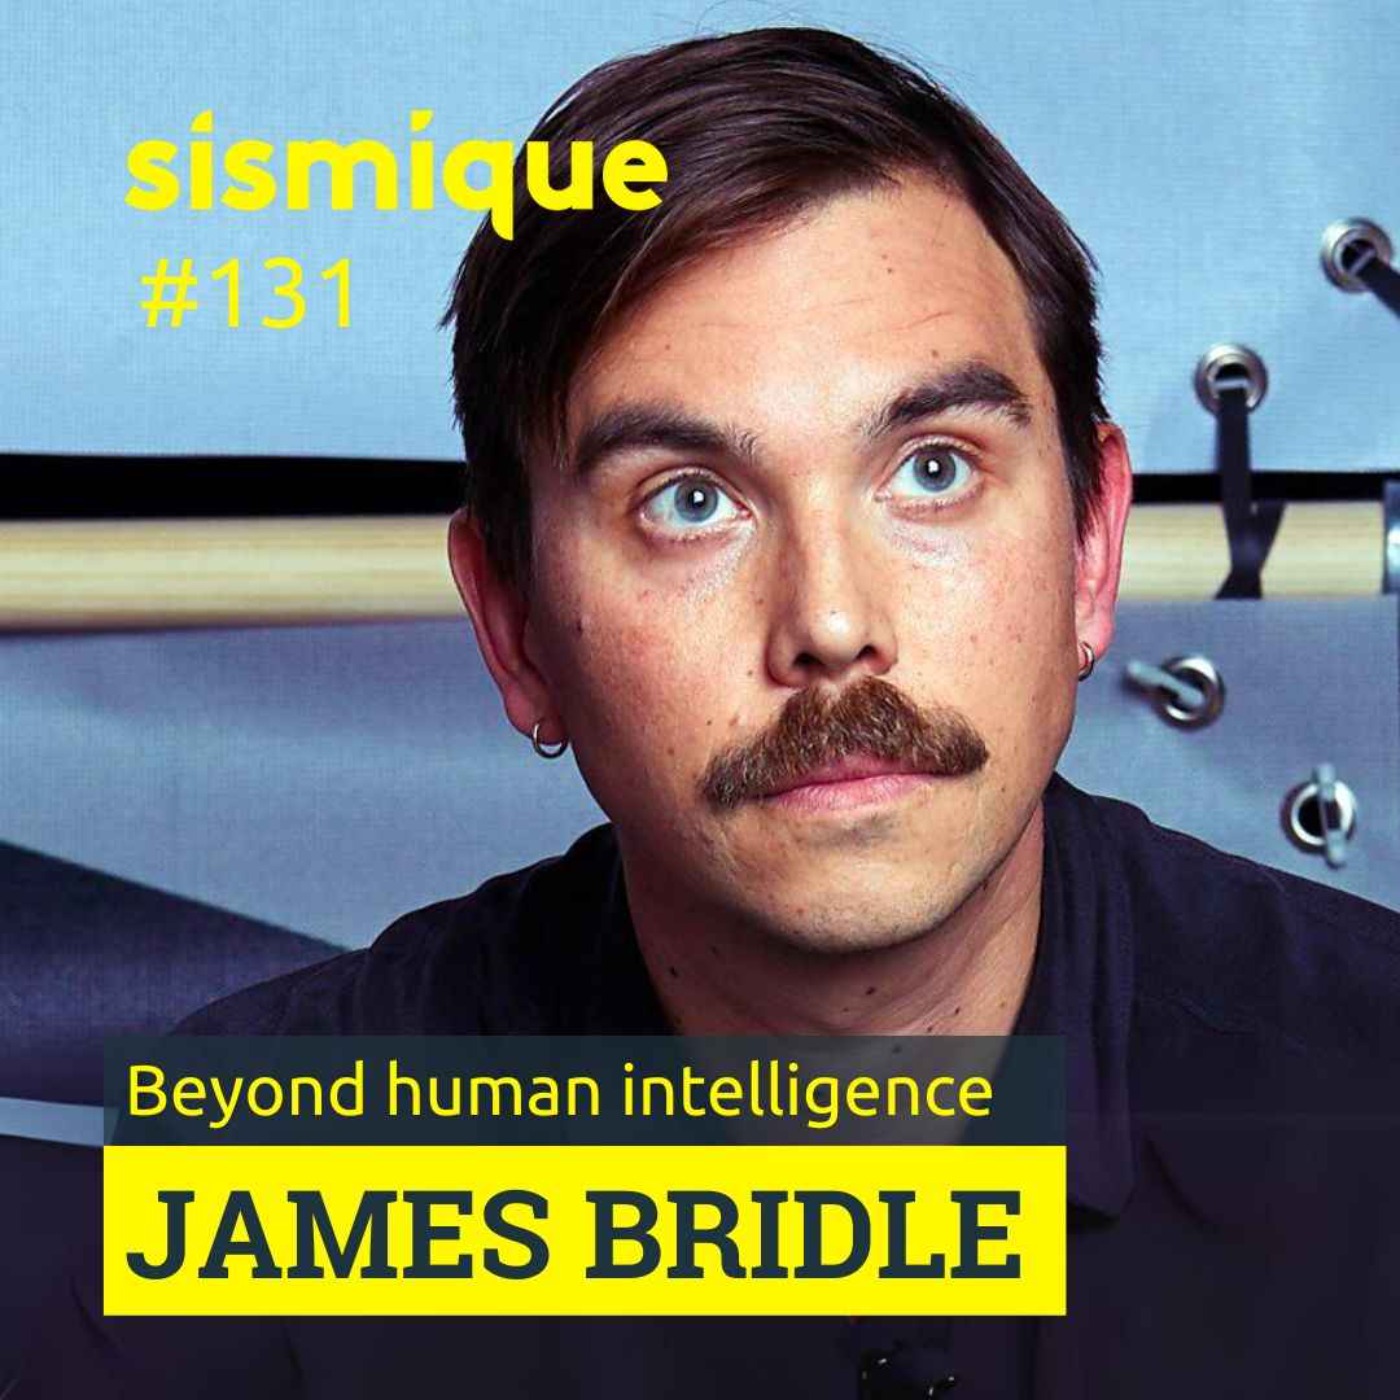 131. 🇬🇧 Au-delà de l'intelligence humaine - JAMES BRIDLE